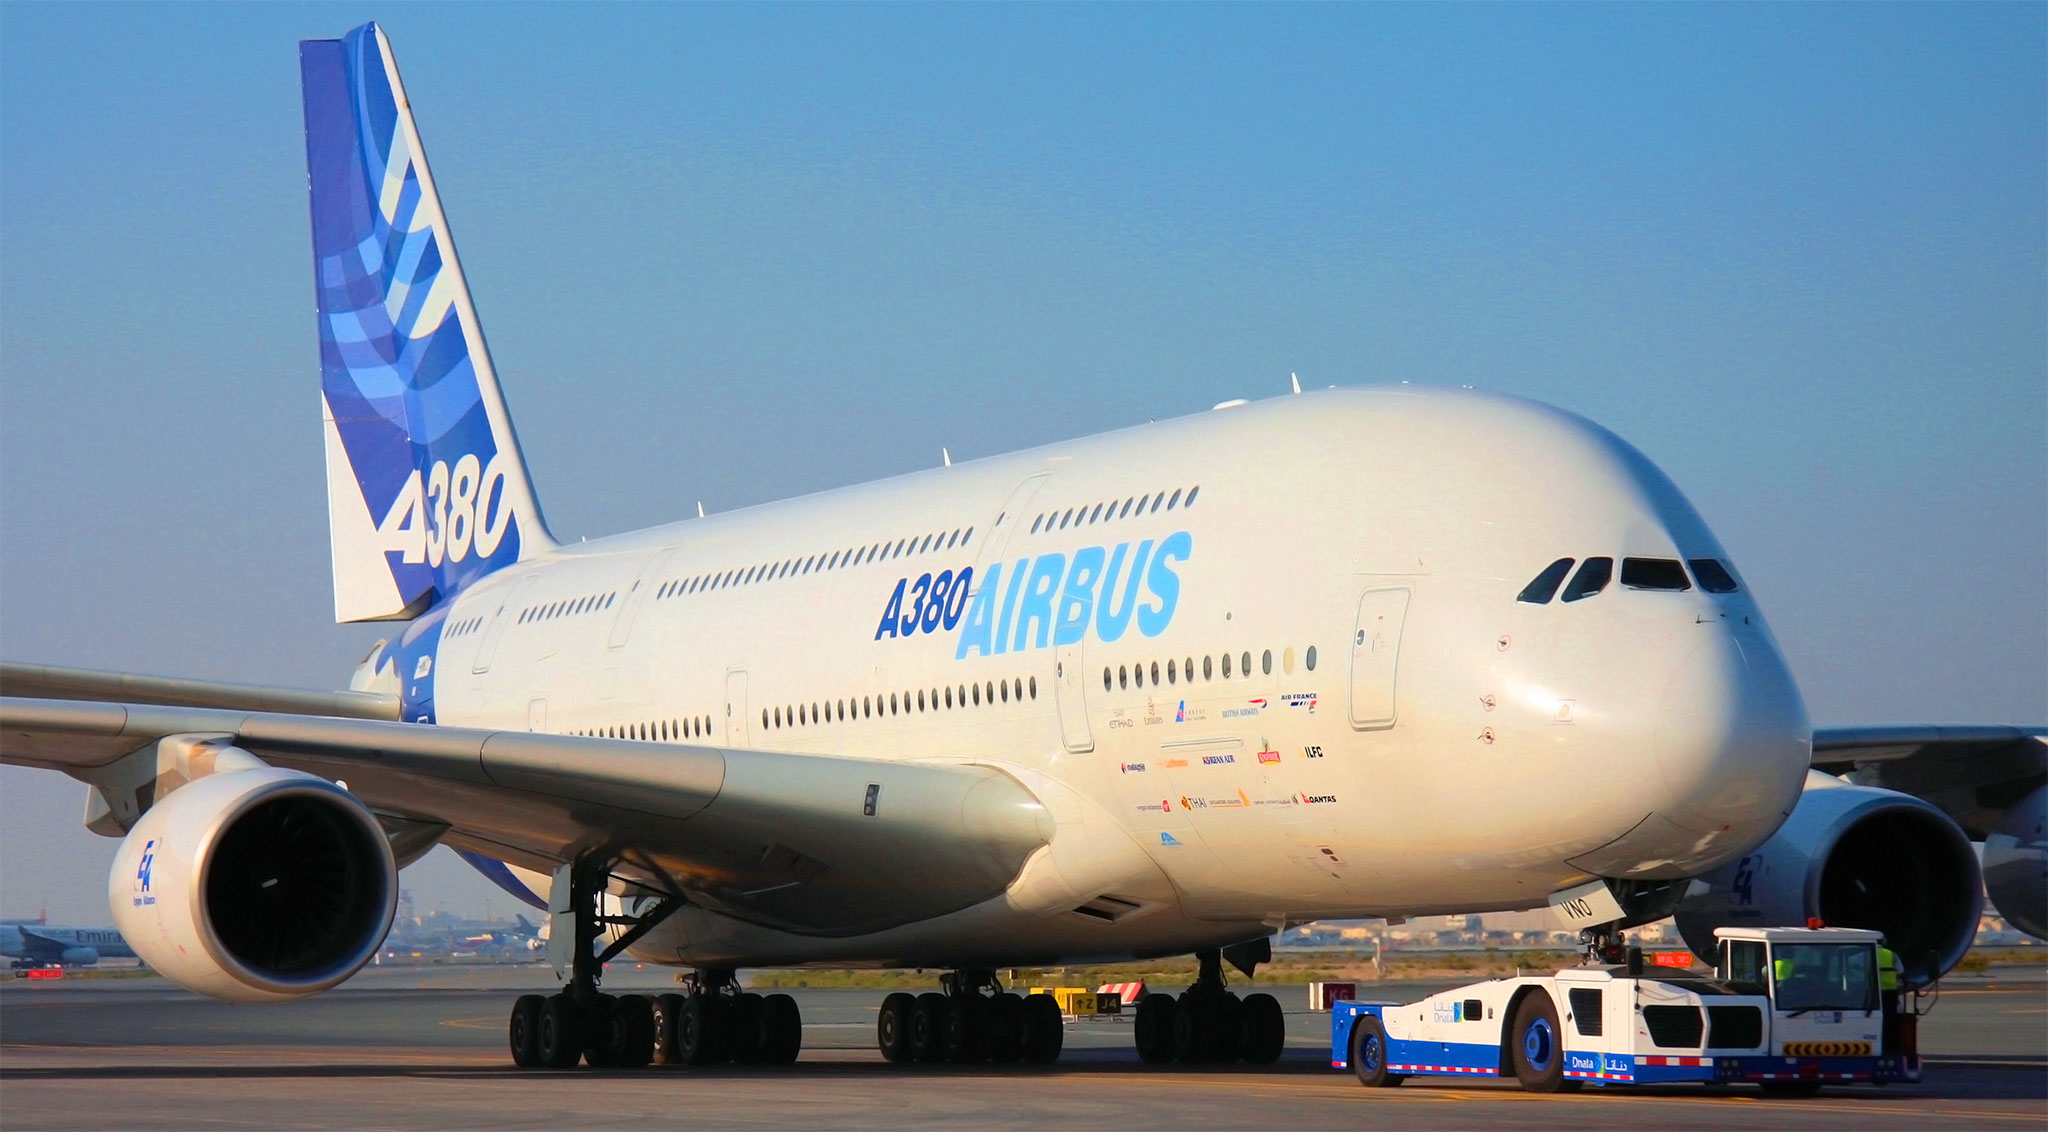 Эирбас. Самолет Аэробус а380. Самый большой самолет Аэробус 380. Самый большой самолёт пассажирский - Airbus а380. Самый большой пассажирский лайнер в мире - Аэробус а380.